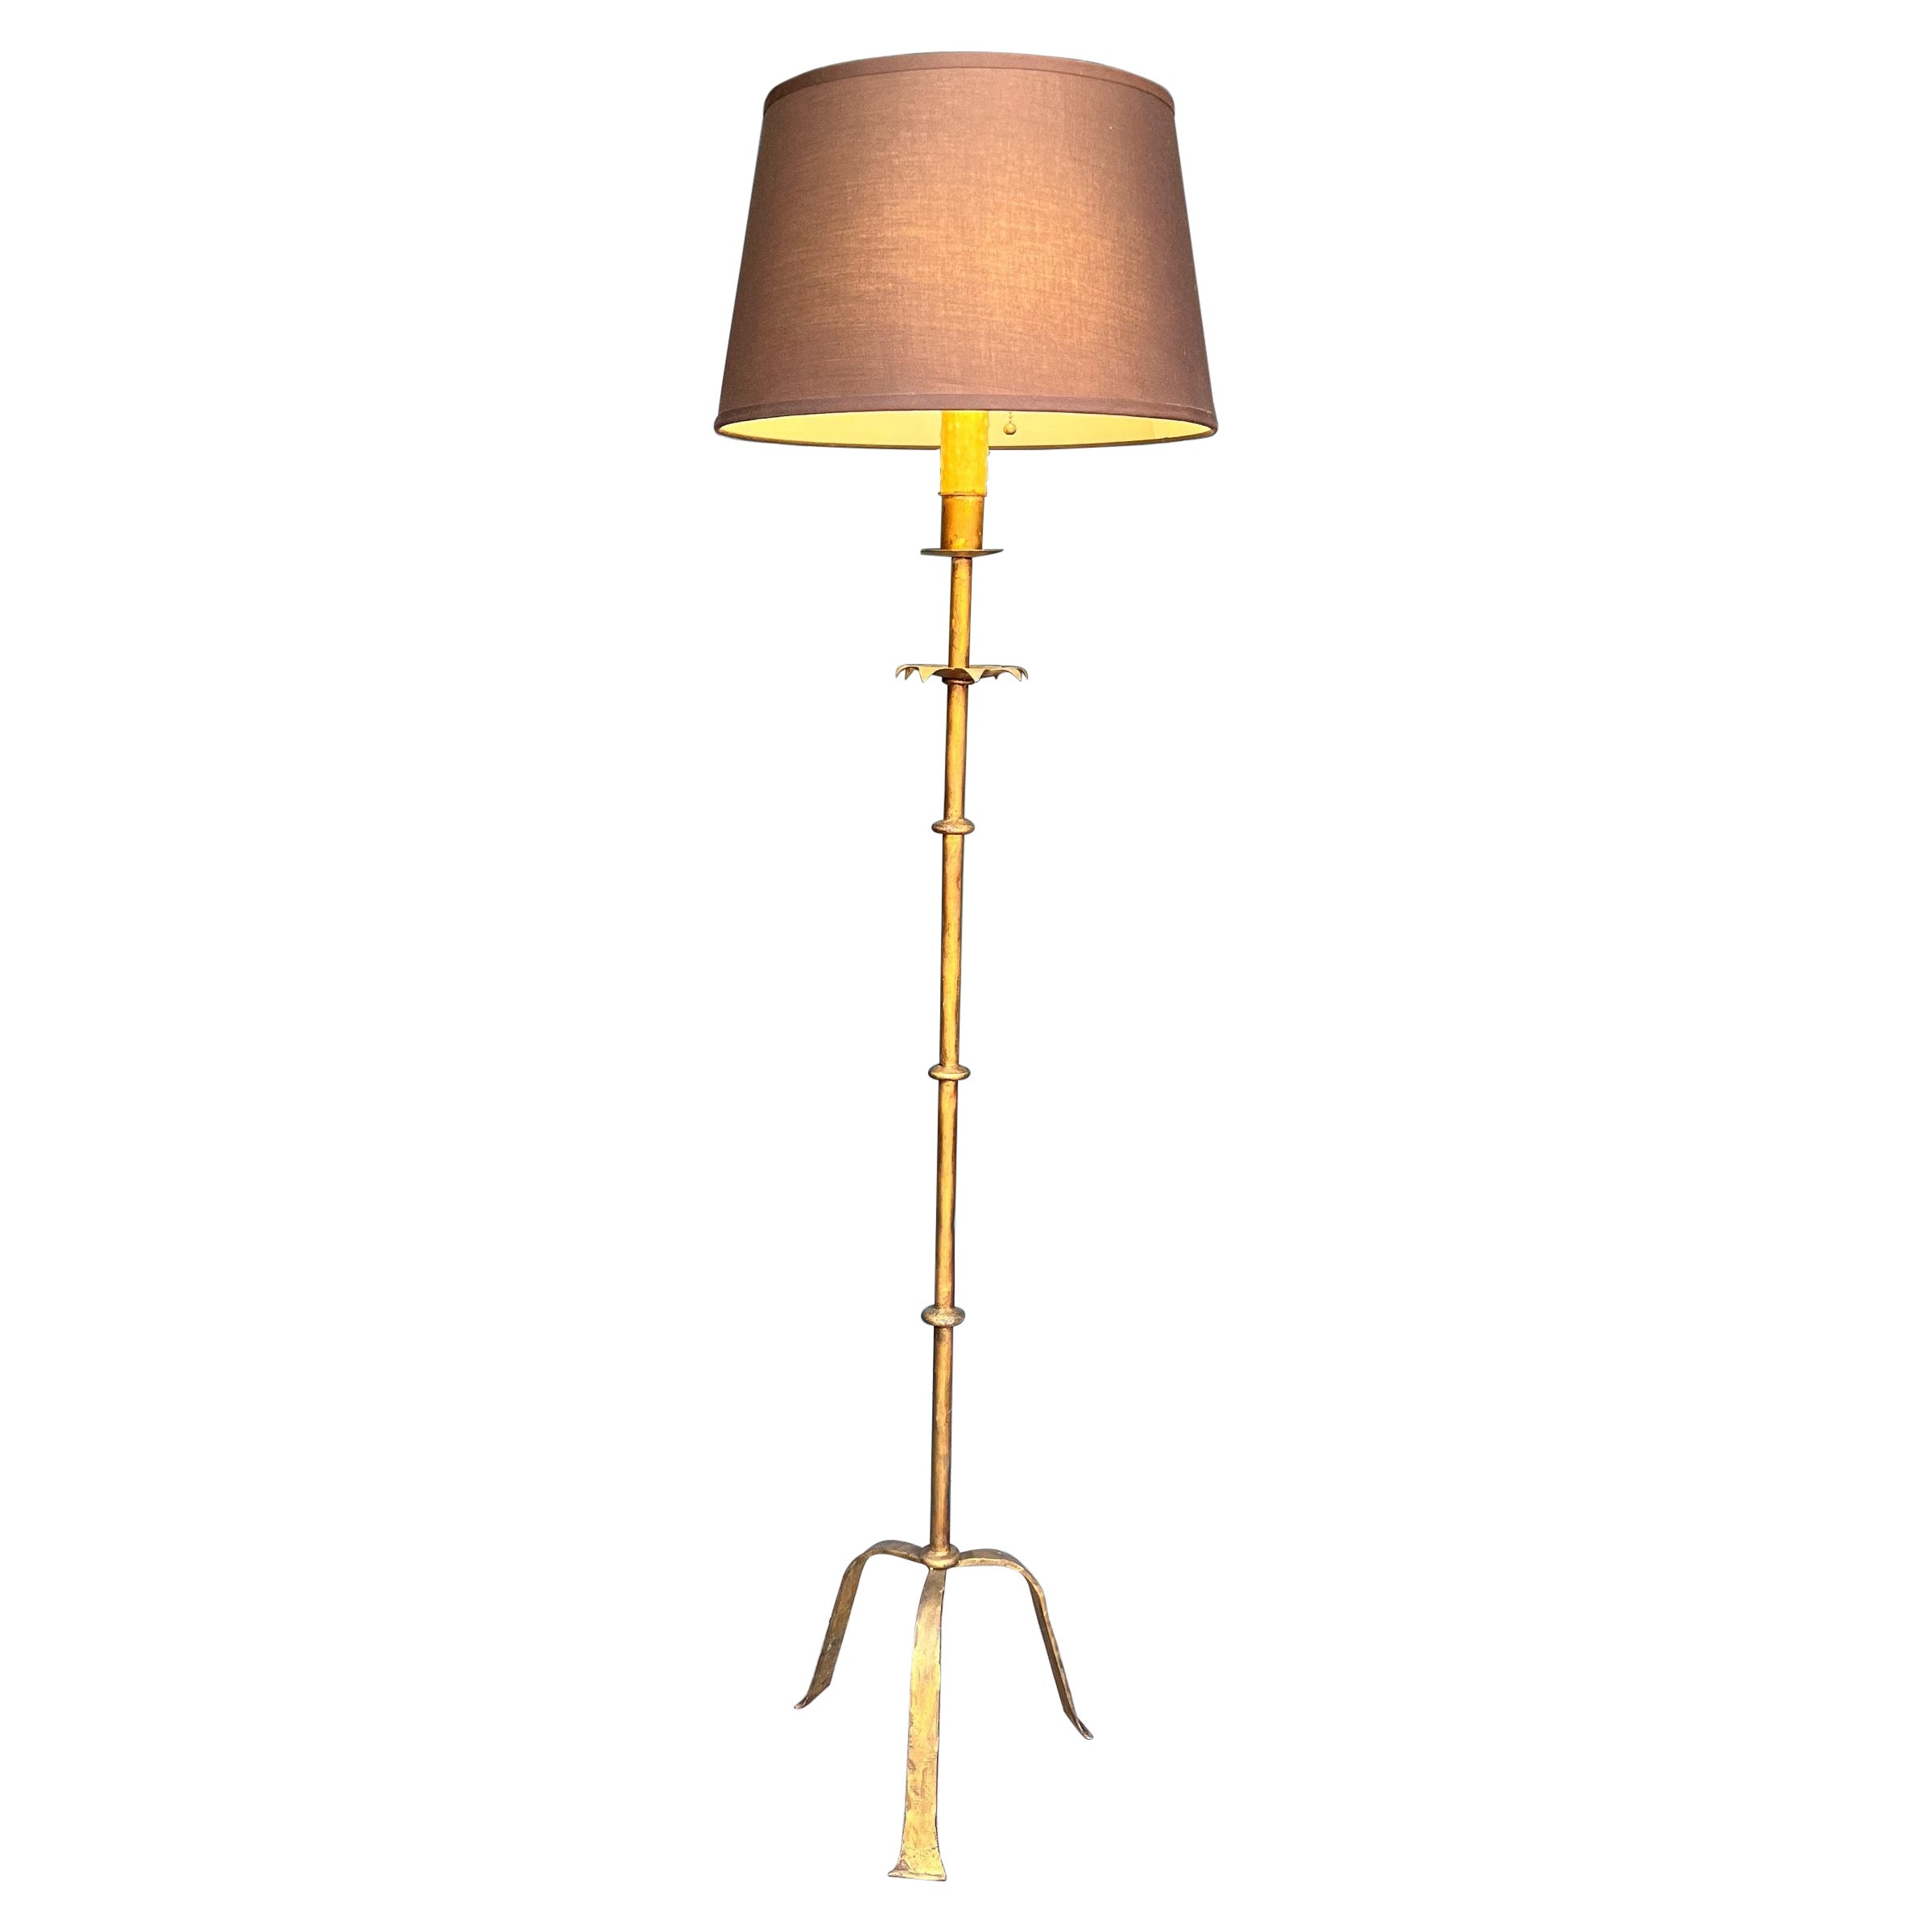 Spanish 1950s Gilt Floor Lamp For Sale